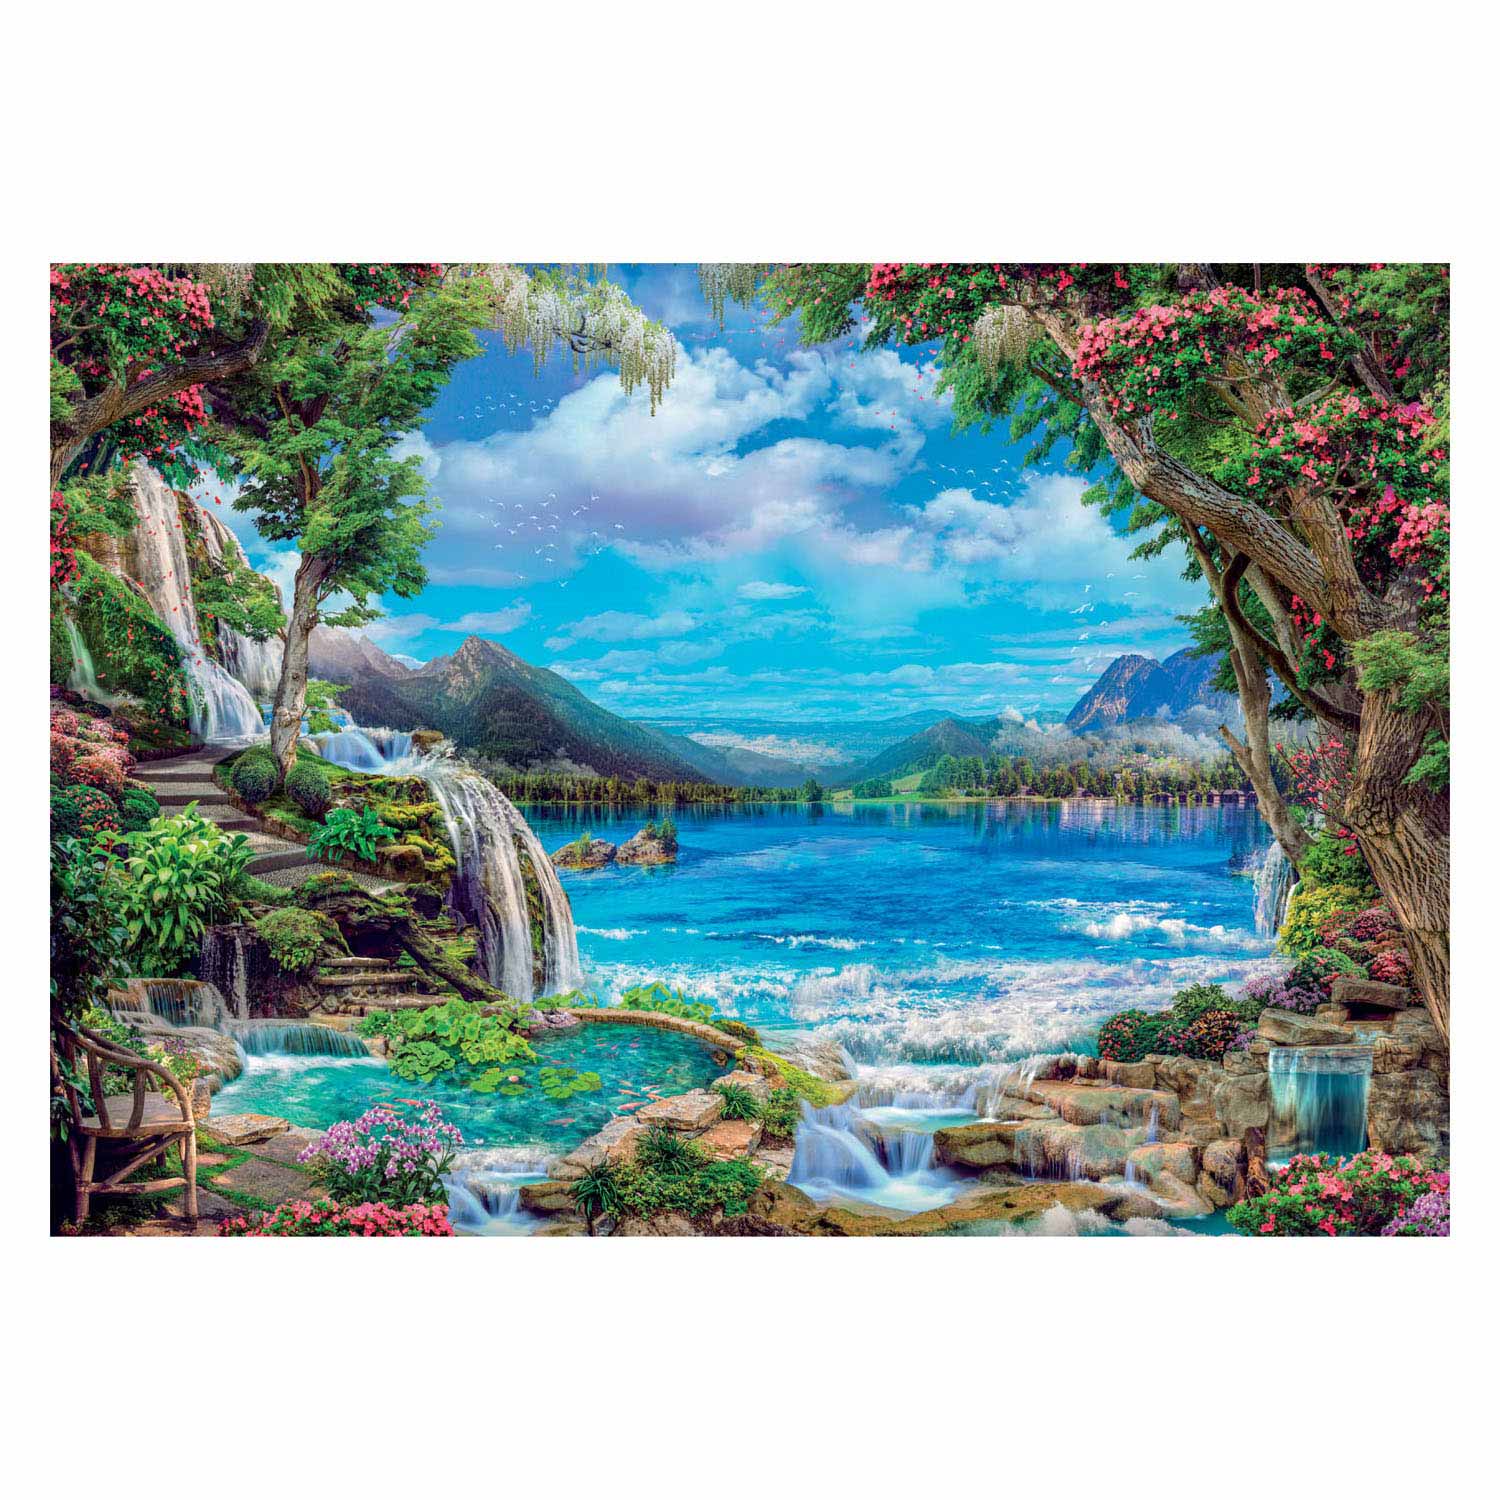 Clementoni Puzzle Paradis sur Terre, 2000 pièces.